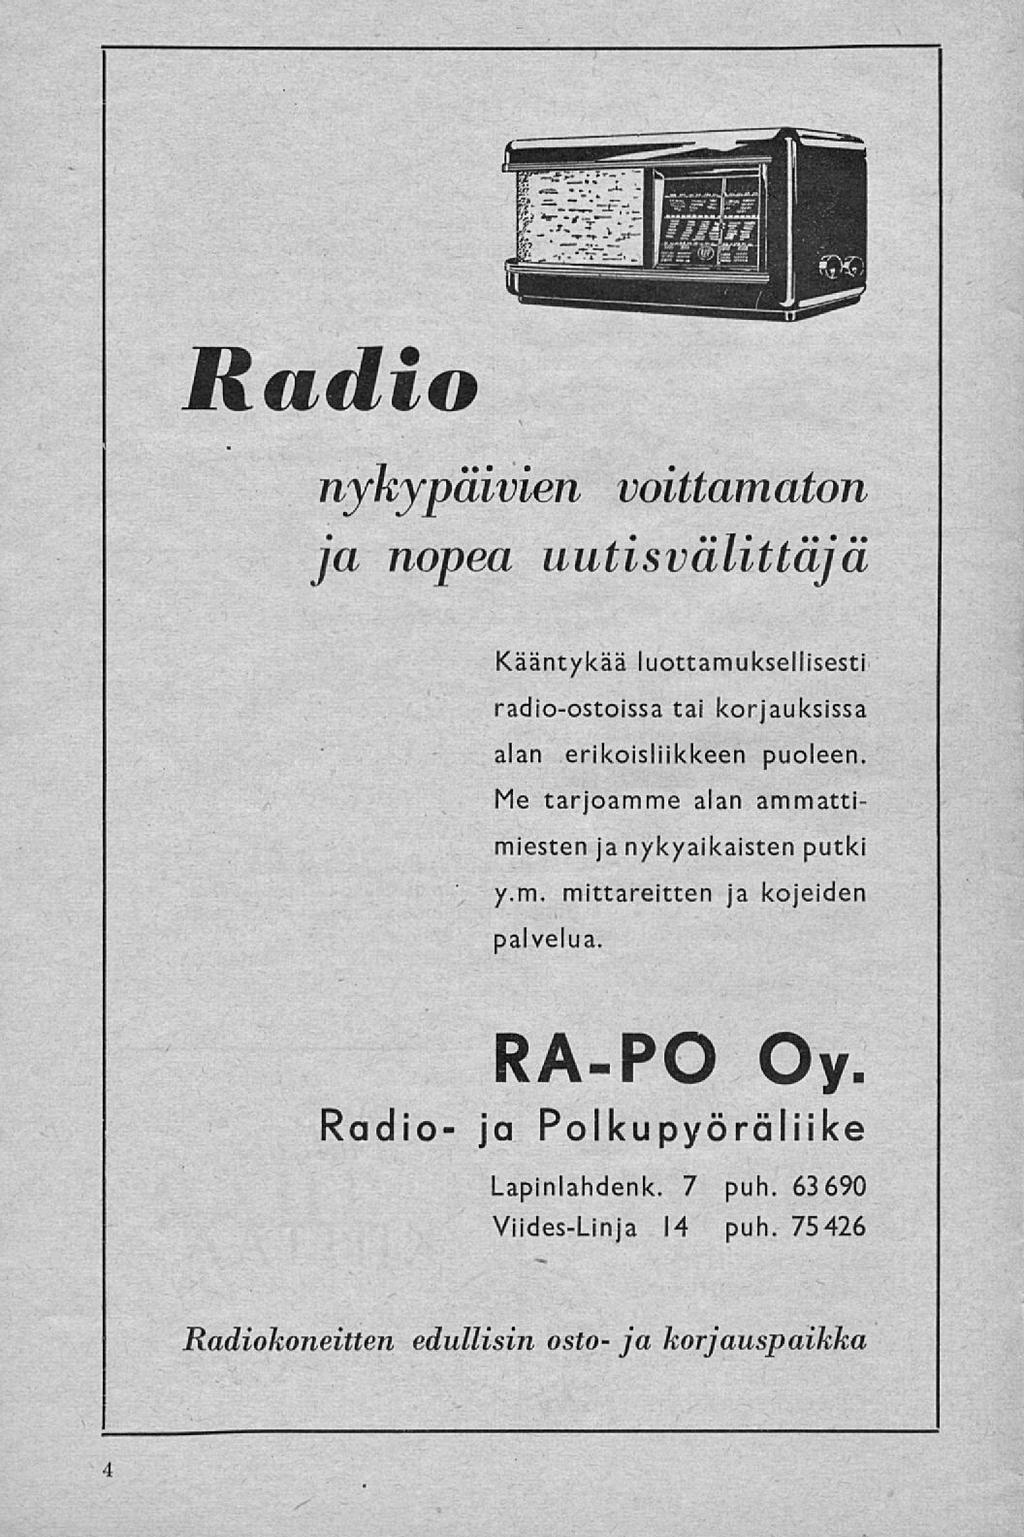 Radio nykypäivien voittamaton ja nopea uutisv alittaja Kääntykää luottamuksellisesti radio-ostoissa tai korjauksissa alan erikoisliikkeen puoleen.